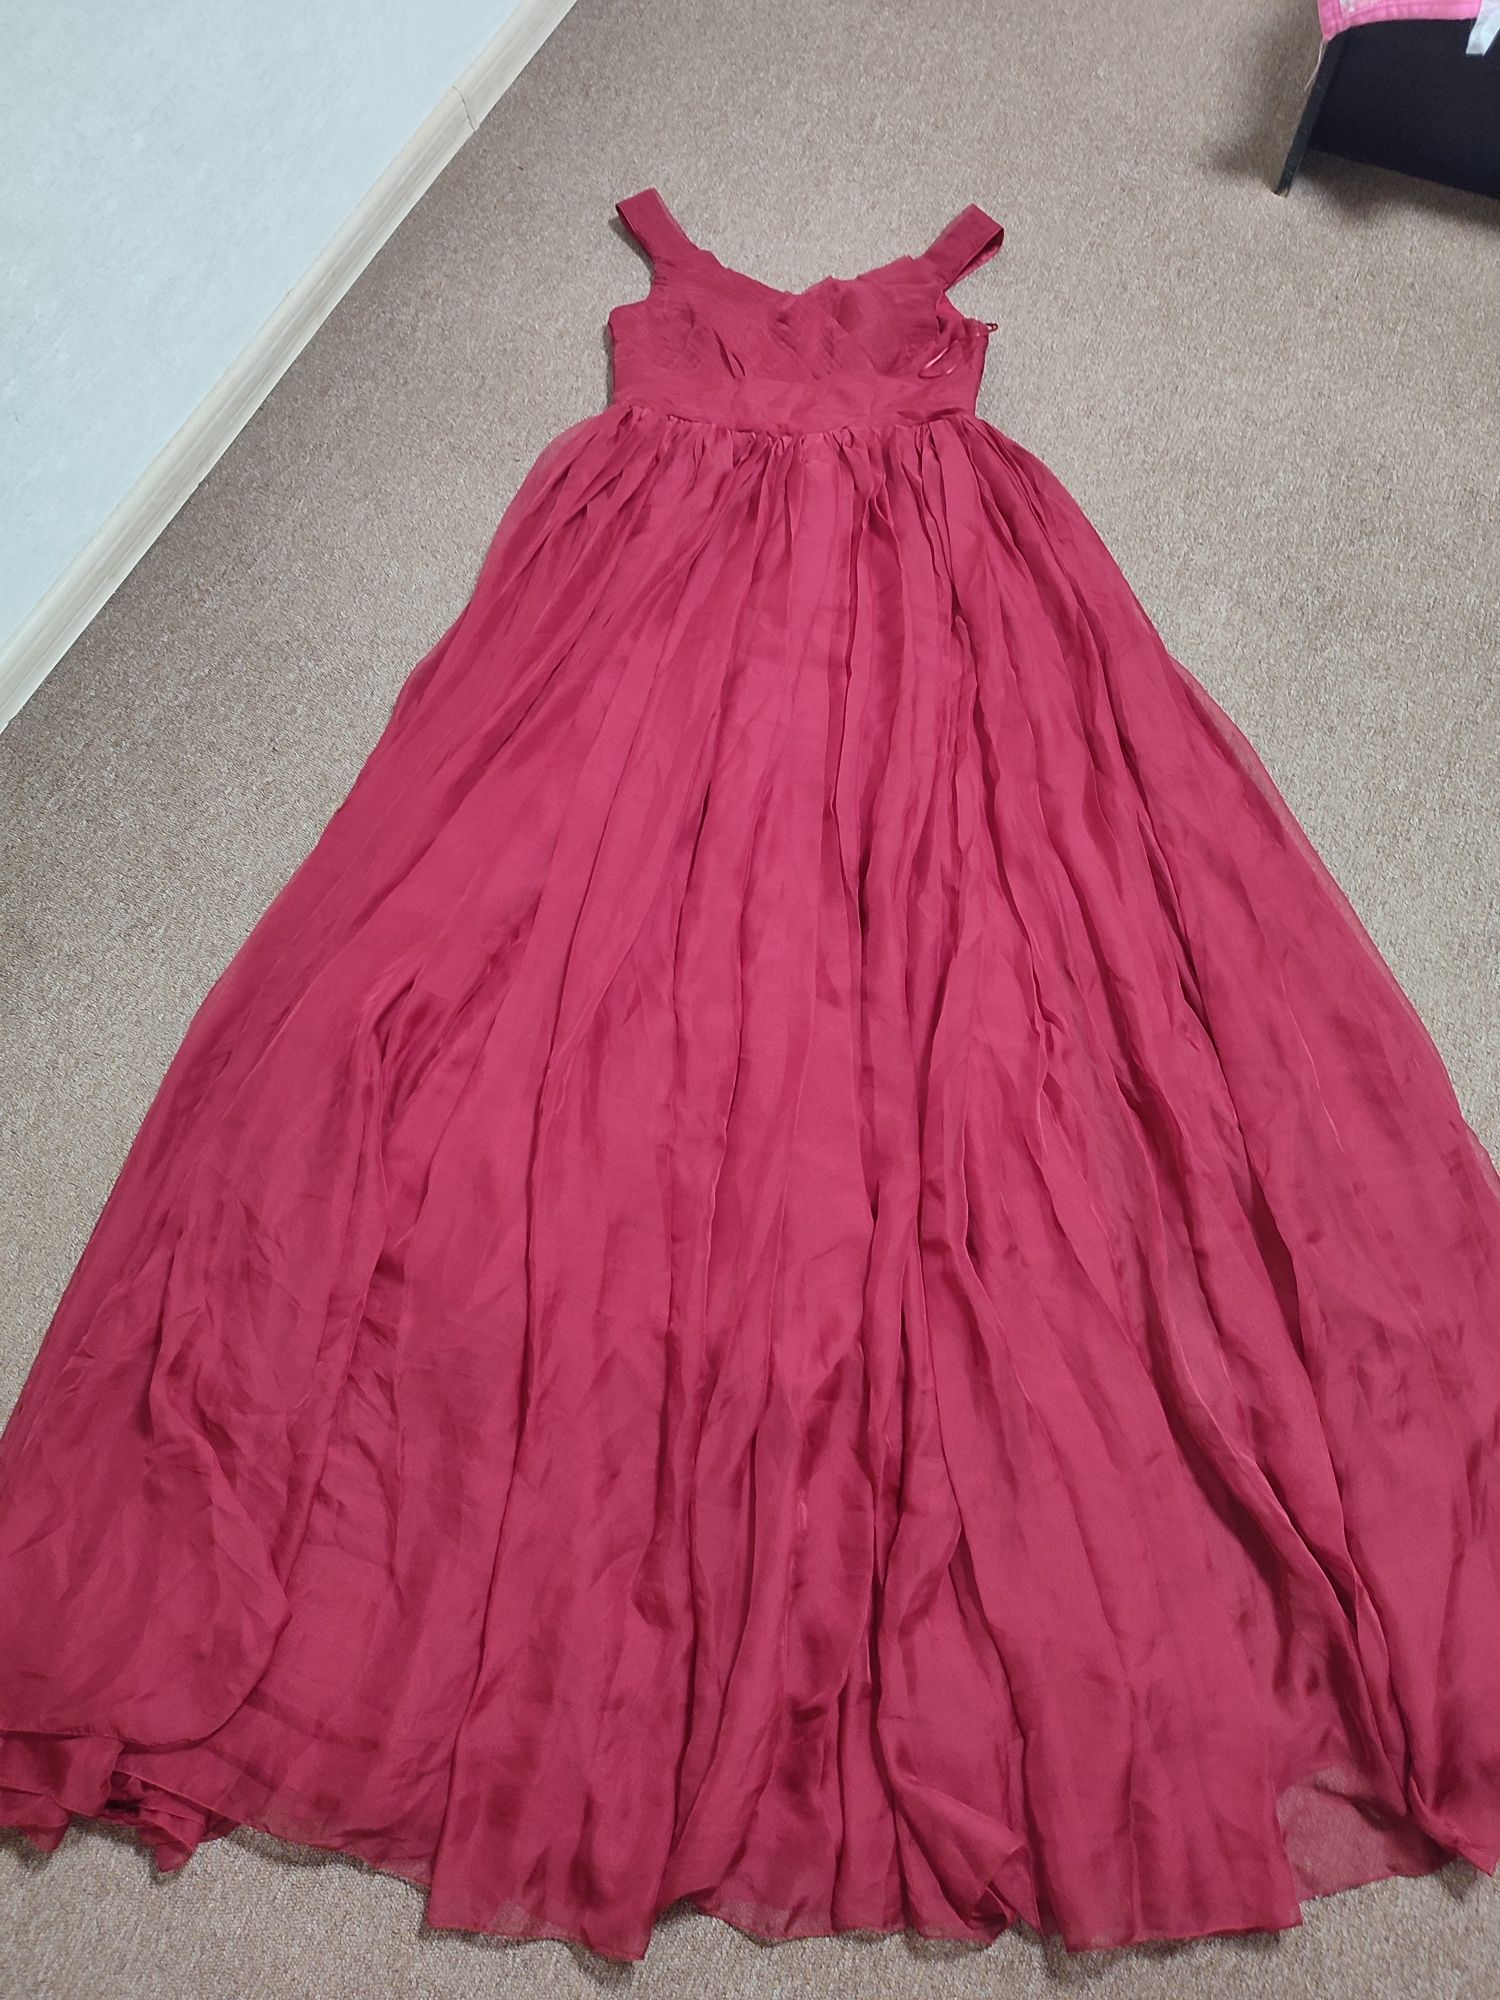 Плаття 42-44 винного кольору.